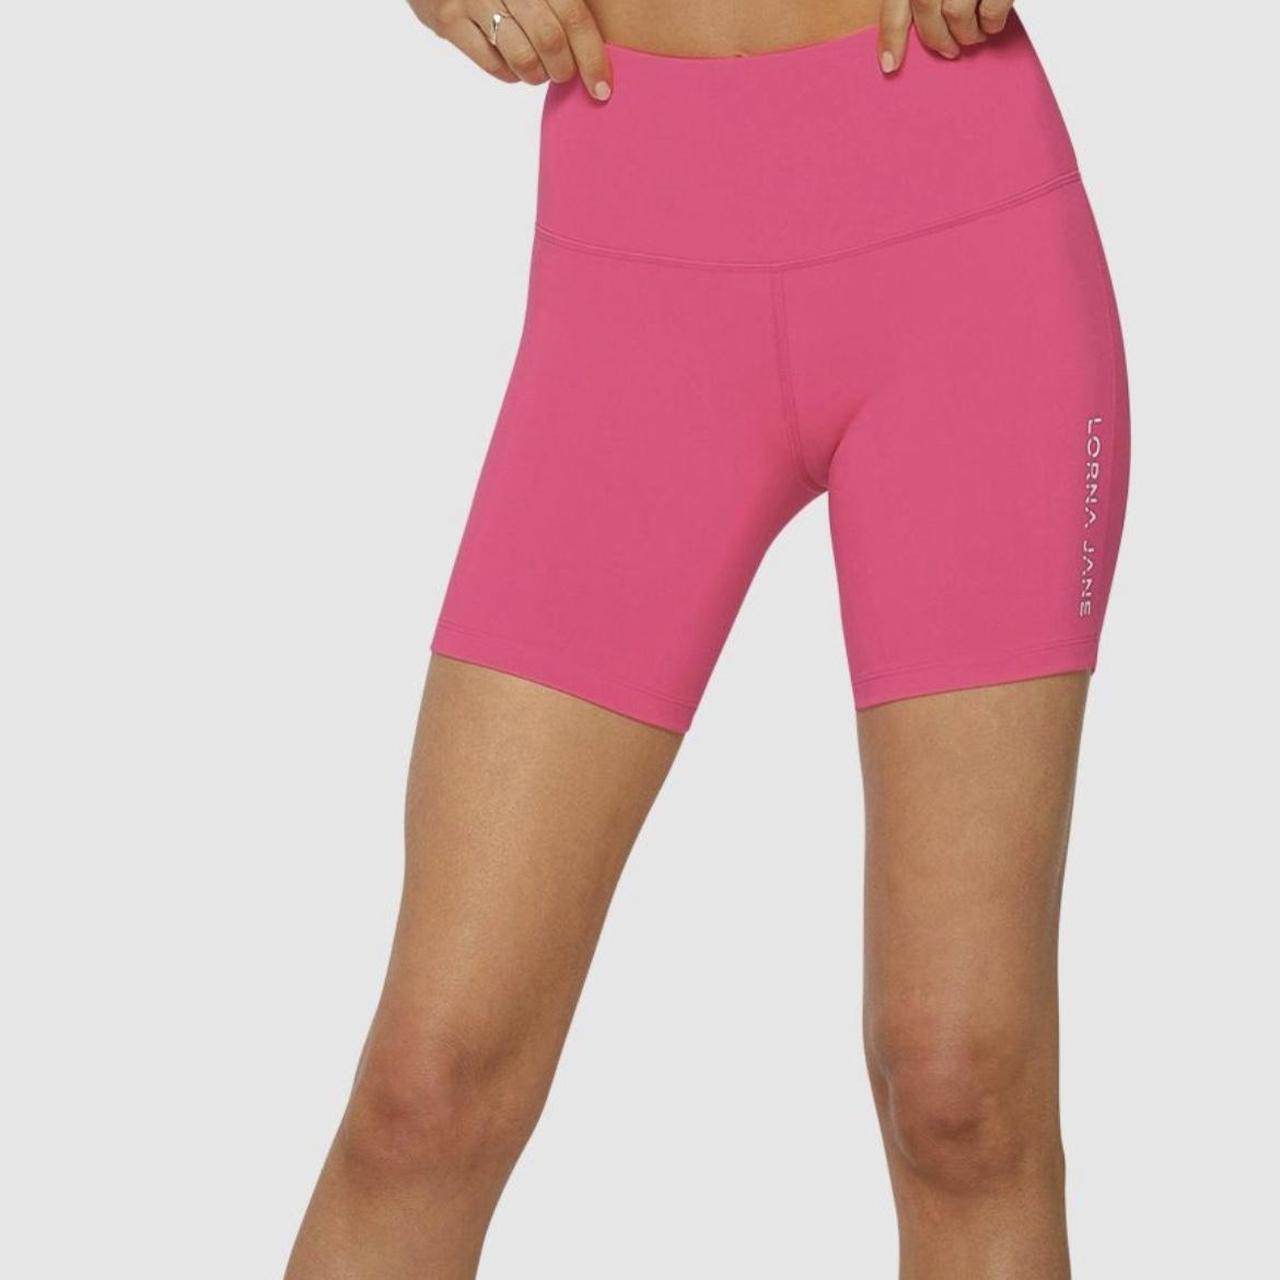 Lorna Jane Women's Pink Shorts | Depop